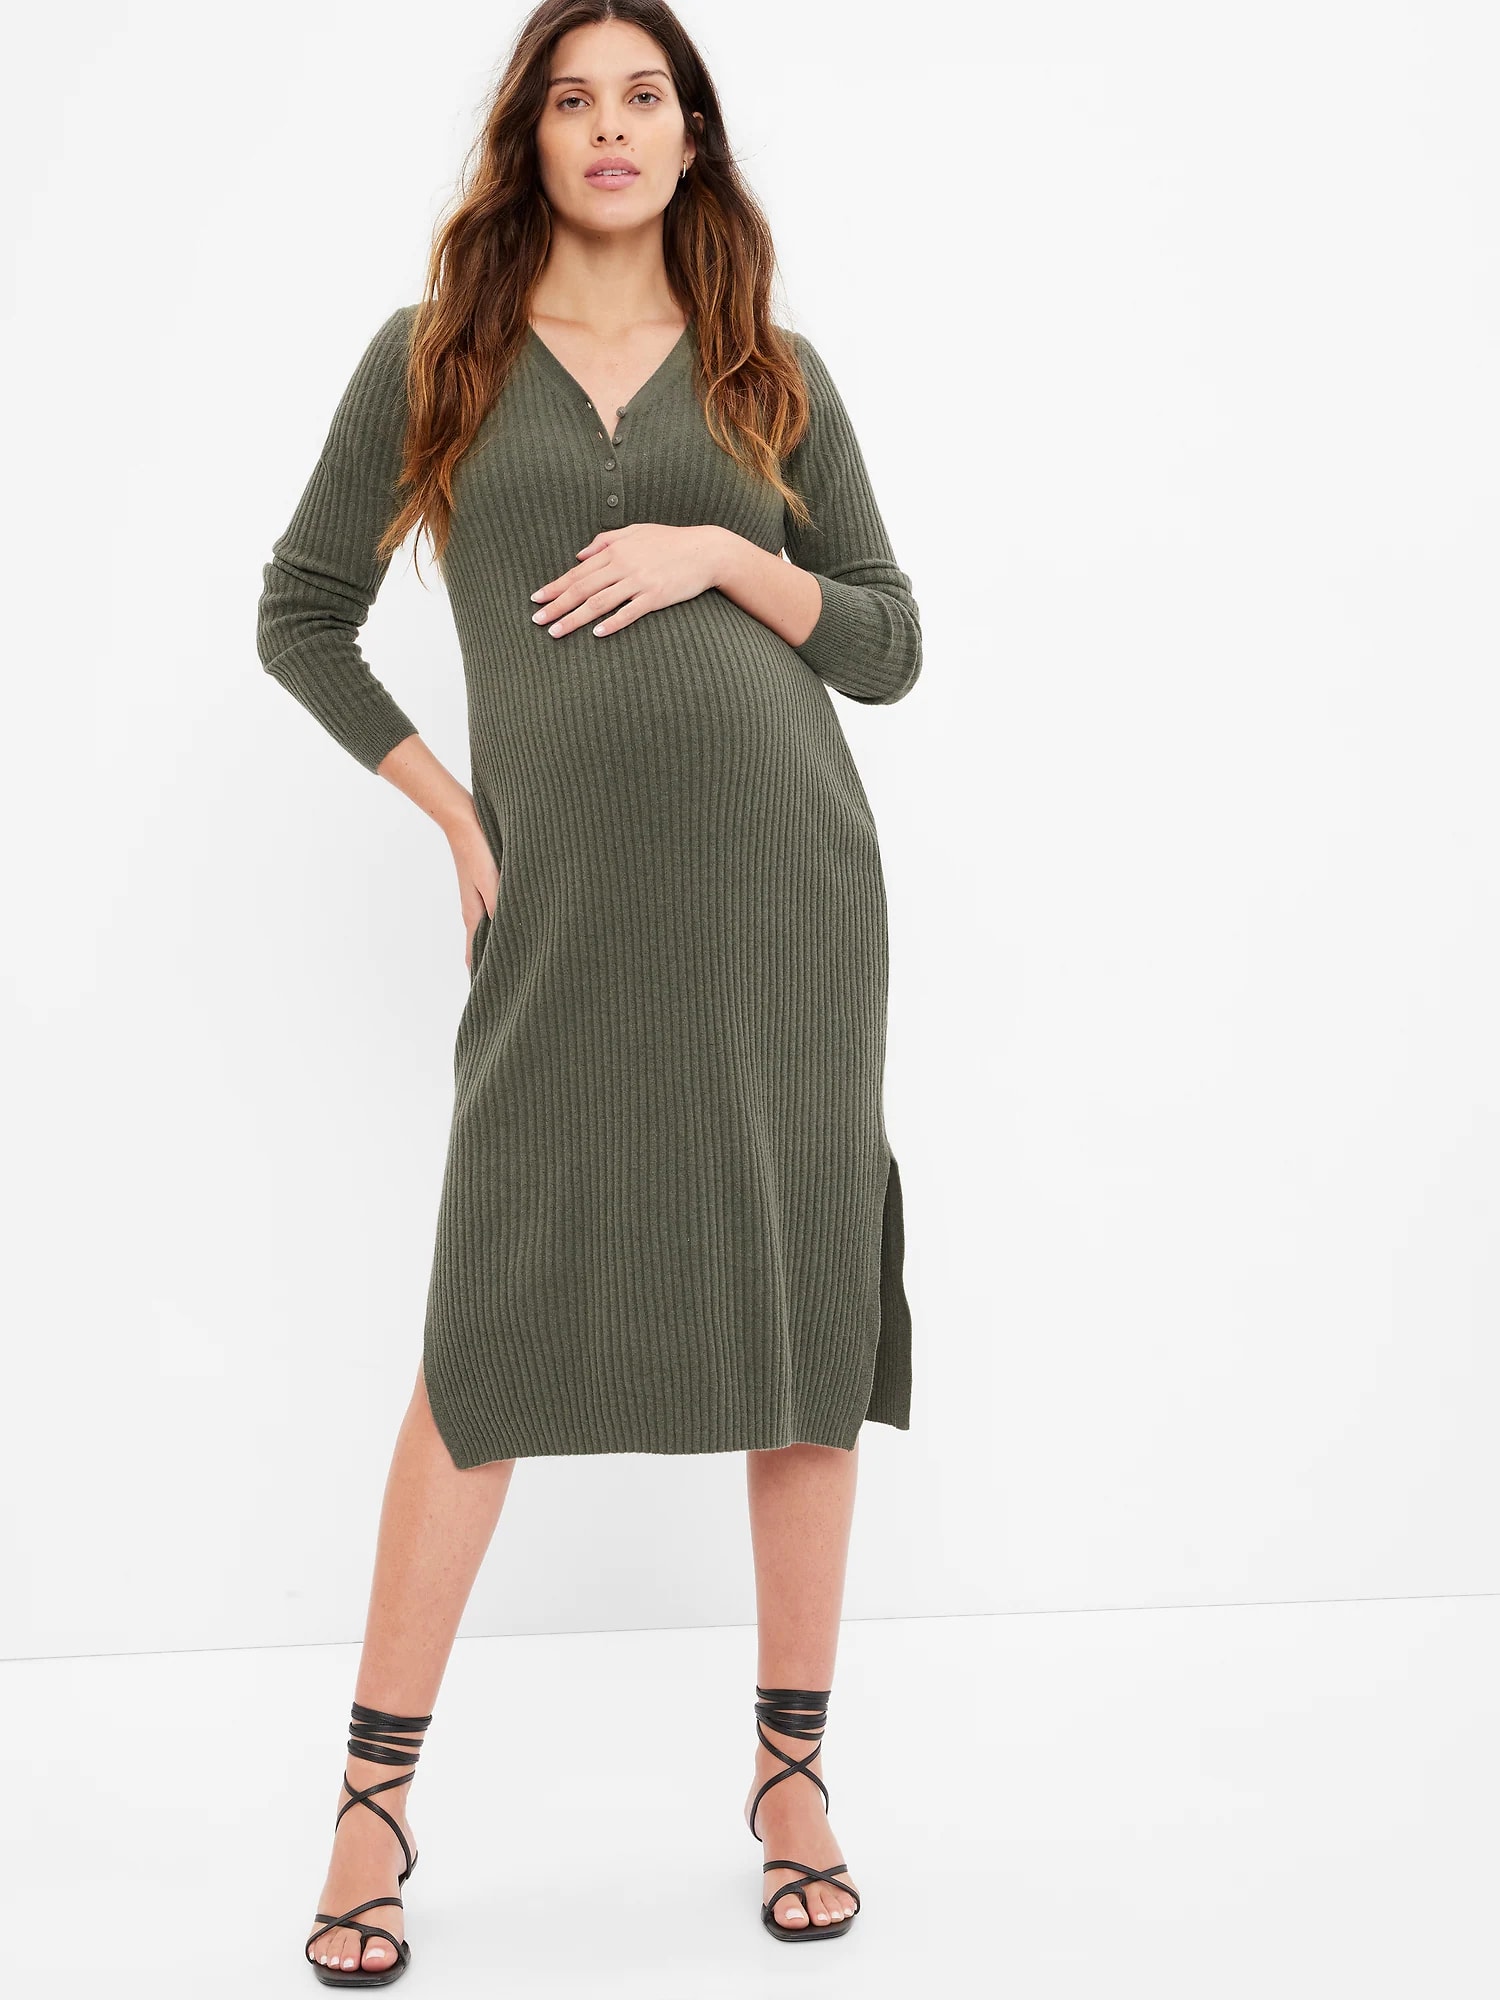 Woman in green henley maternity dress